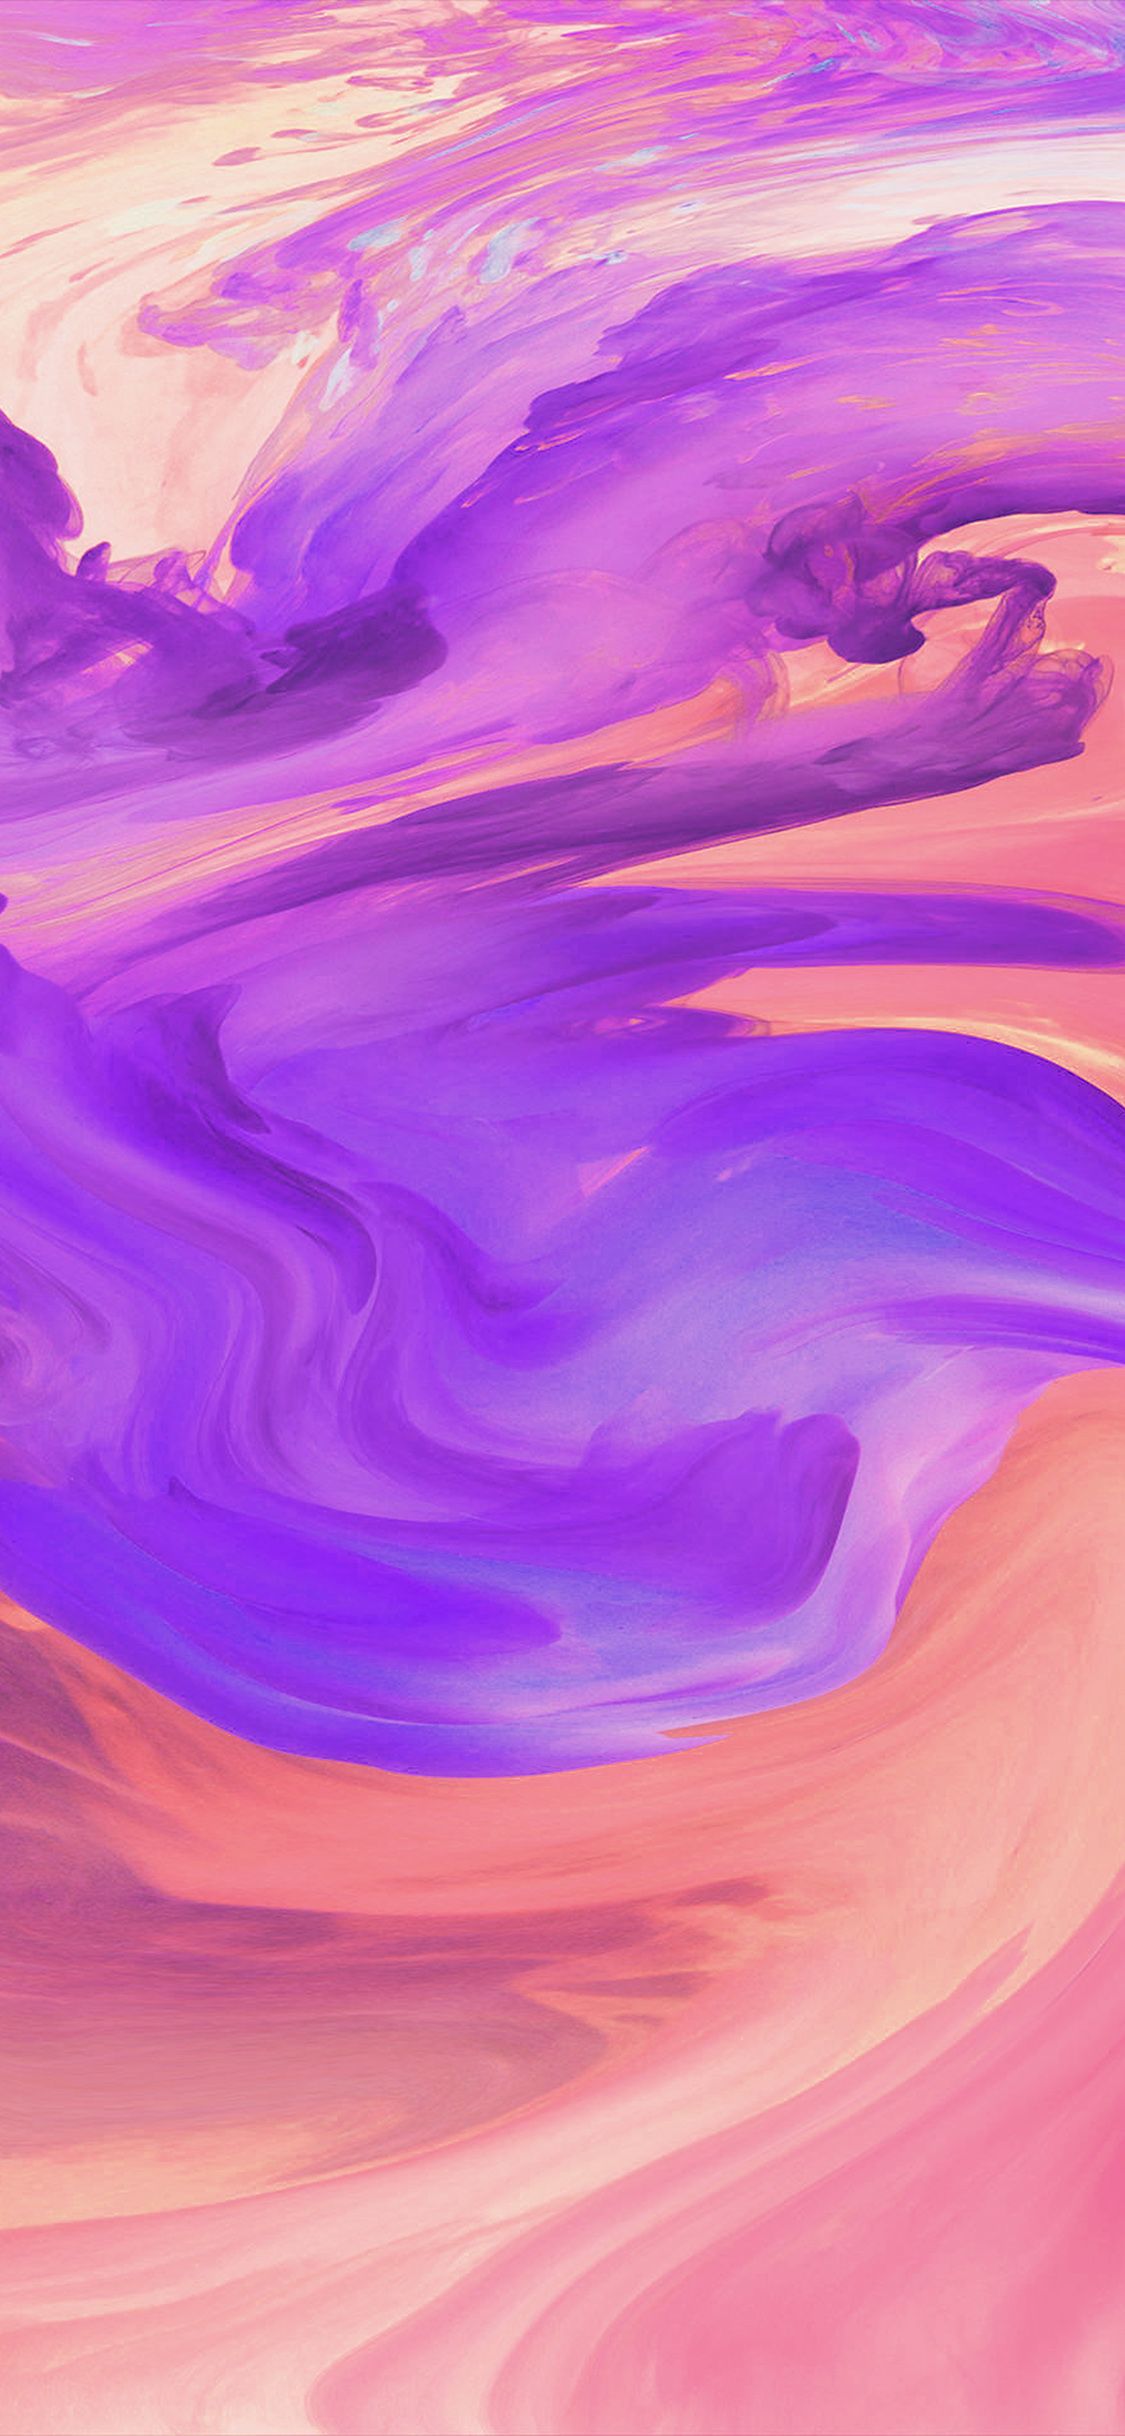 Huracán remolino arte abstracto pintura púrpura patrón iPhone X